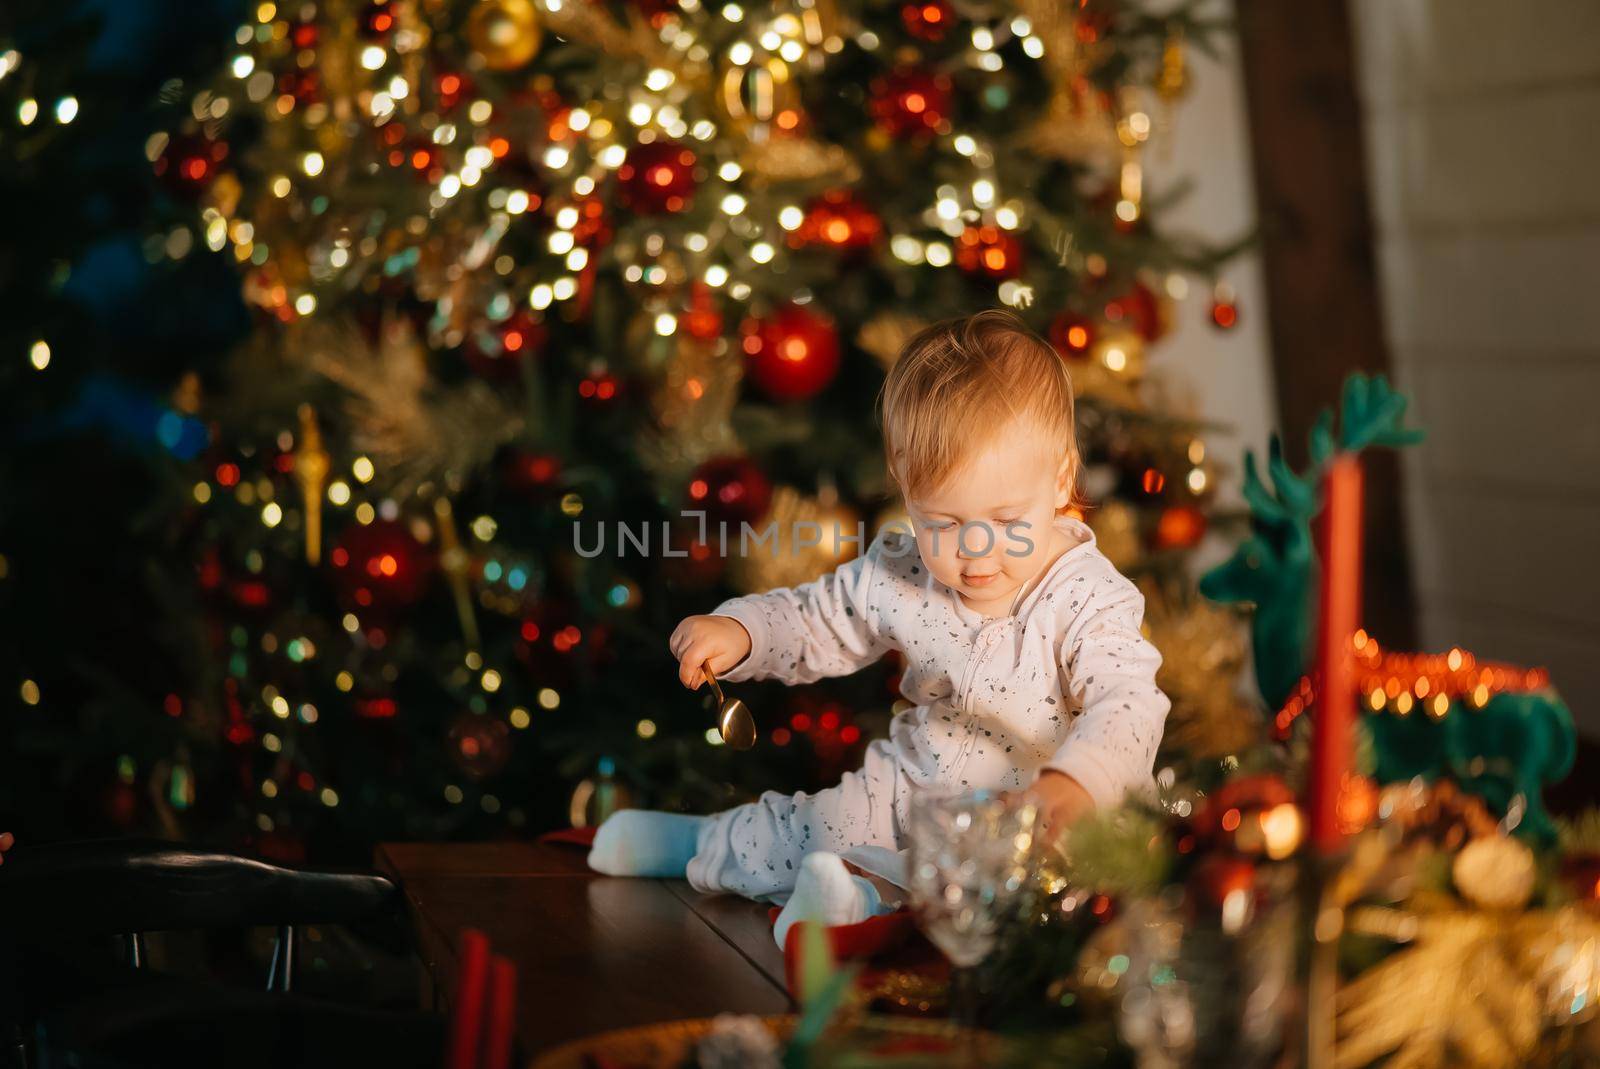 Child celebrating holidays near Christmas tree